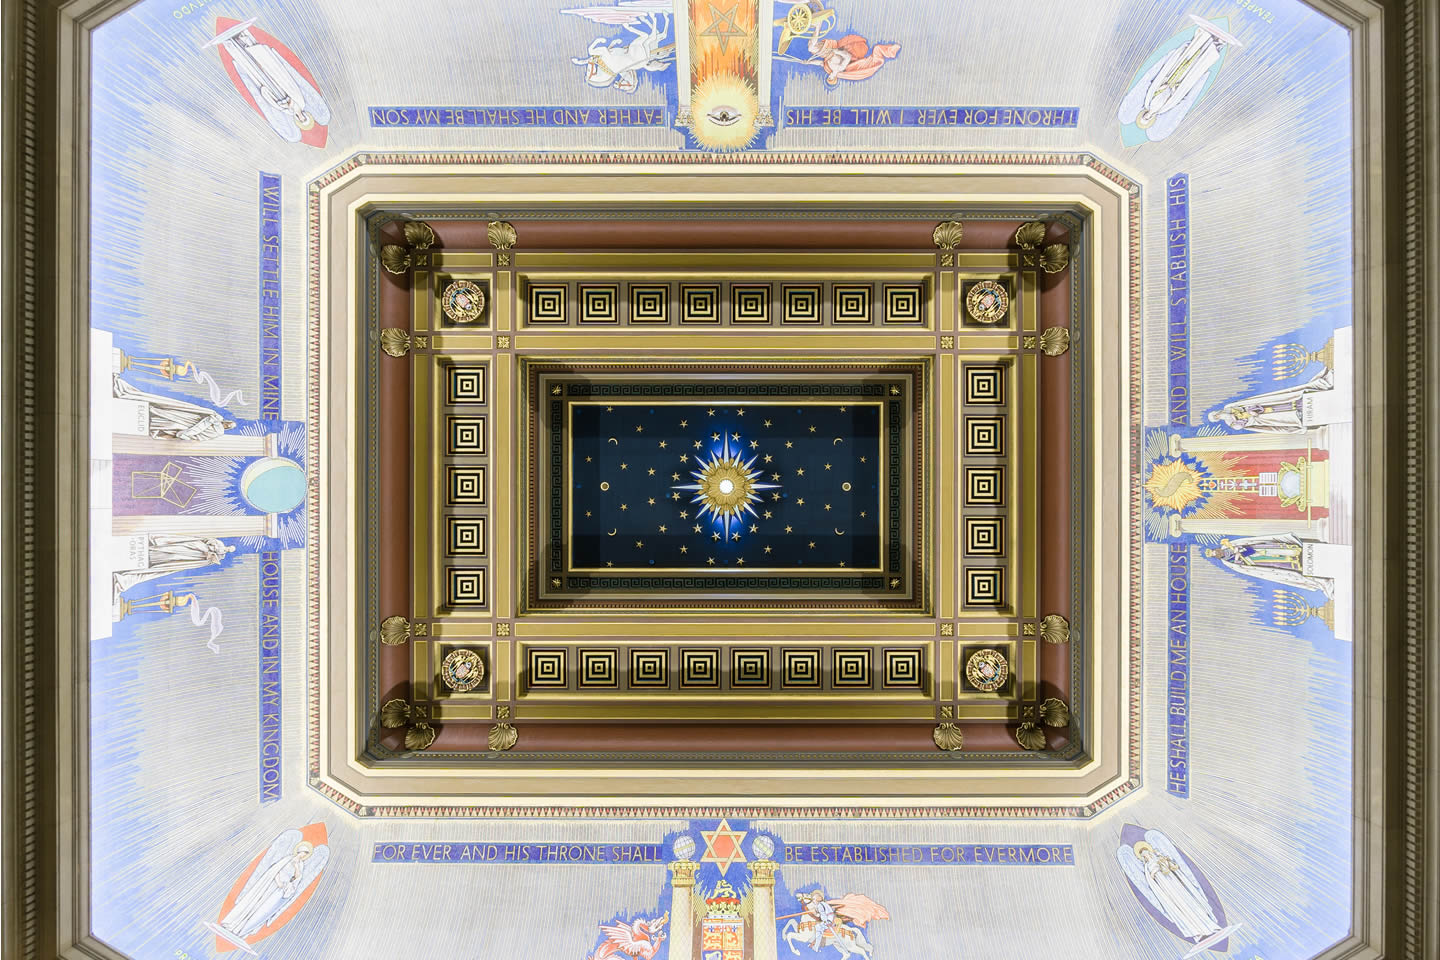 Freemasons' Hall